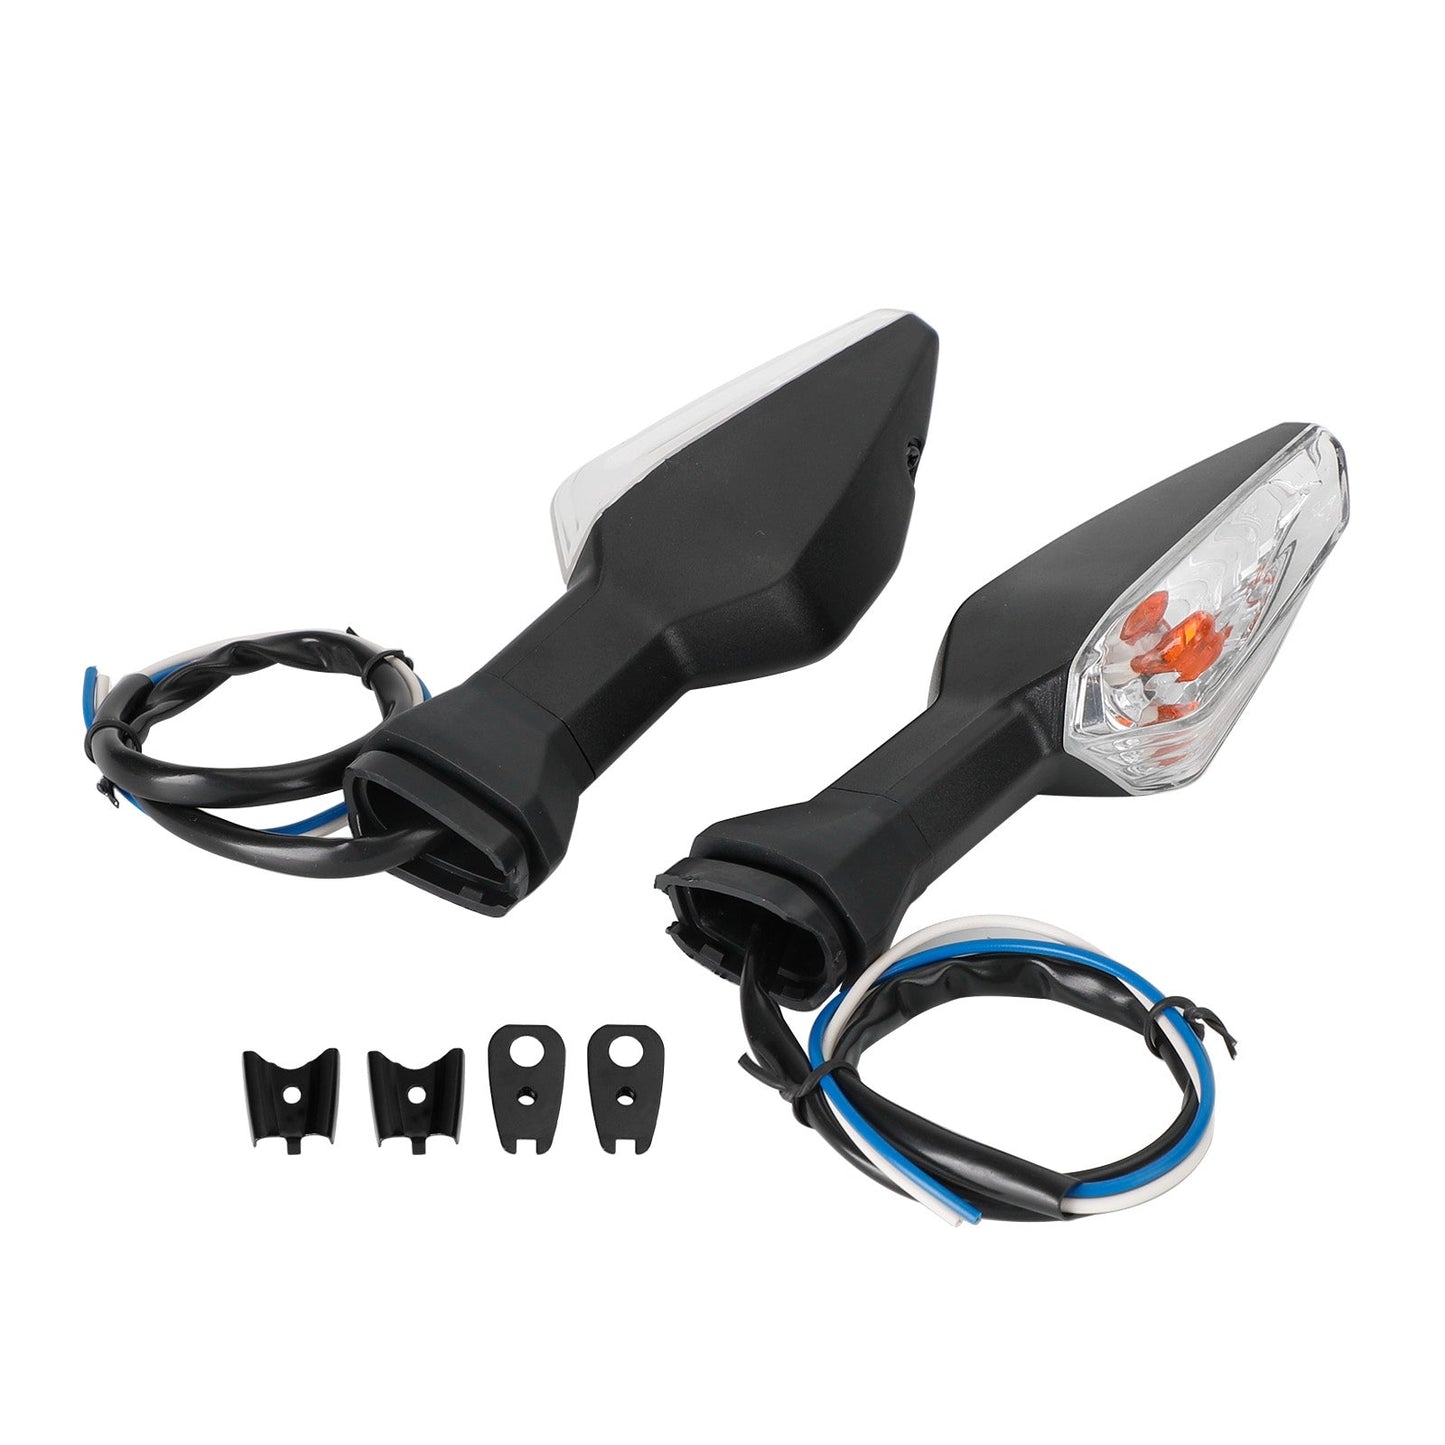 Blinklicht Licht Indikator Lampe Für Kawasaki Ninja400 Z650 Z900 Z1000 Z1000SX